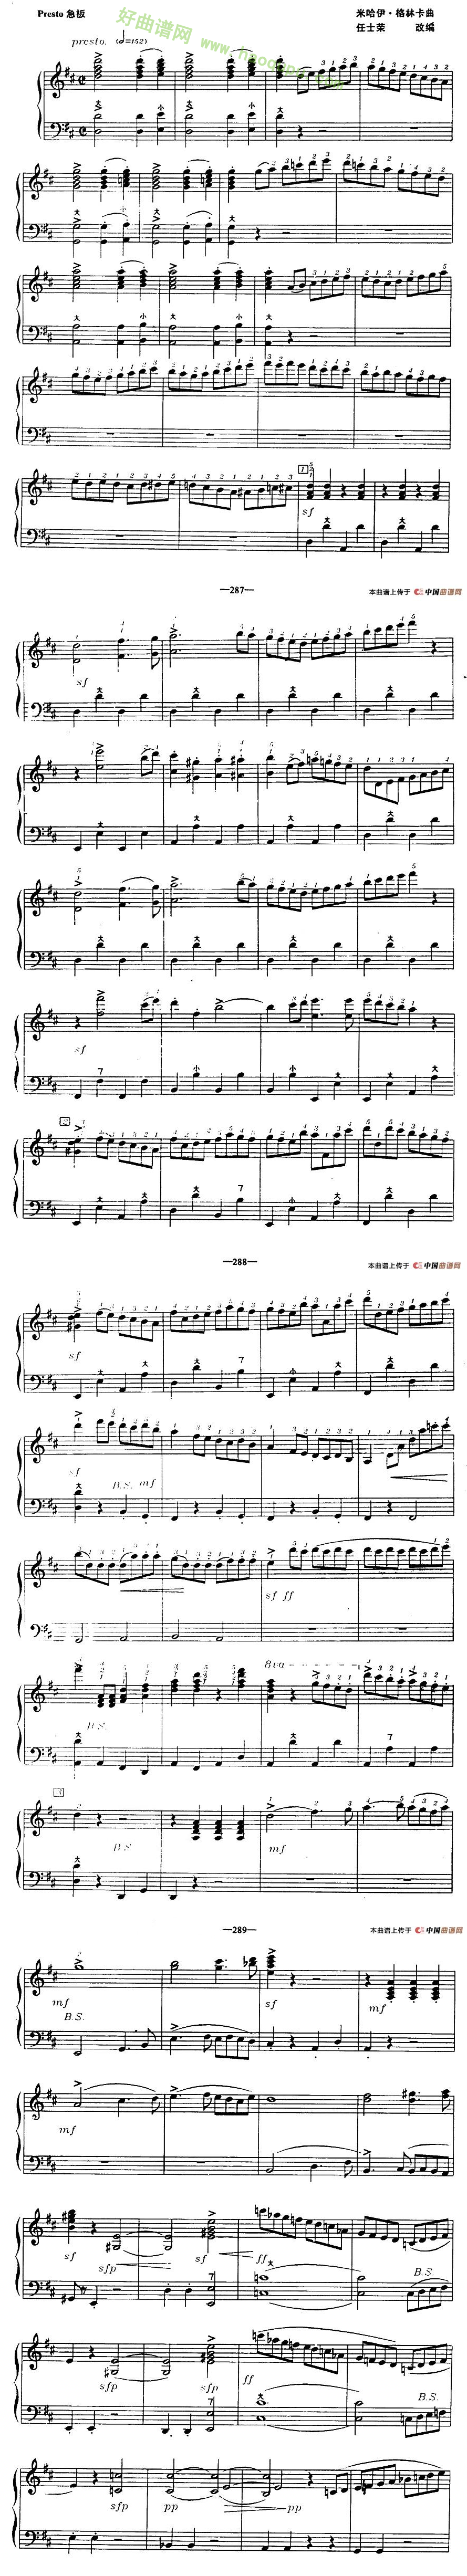 《鲁斯兰与柳德米拉》序曲手风琴曲谱第2张